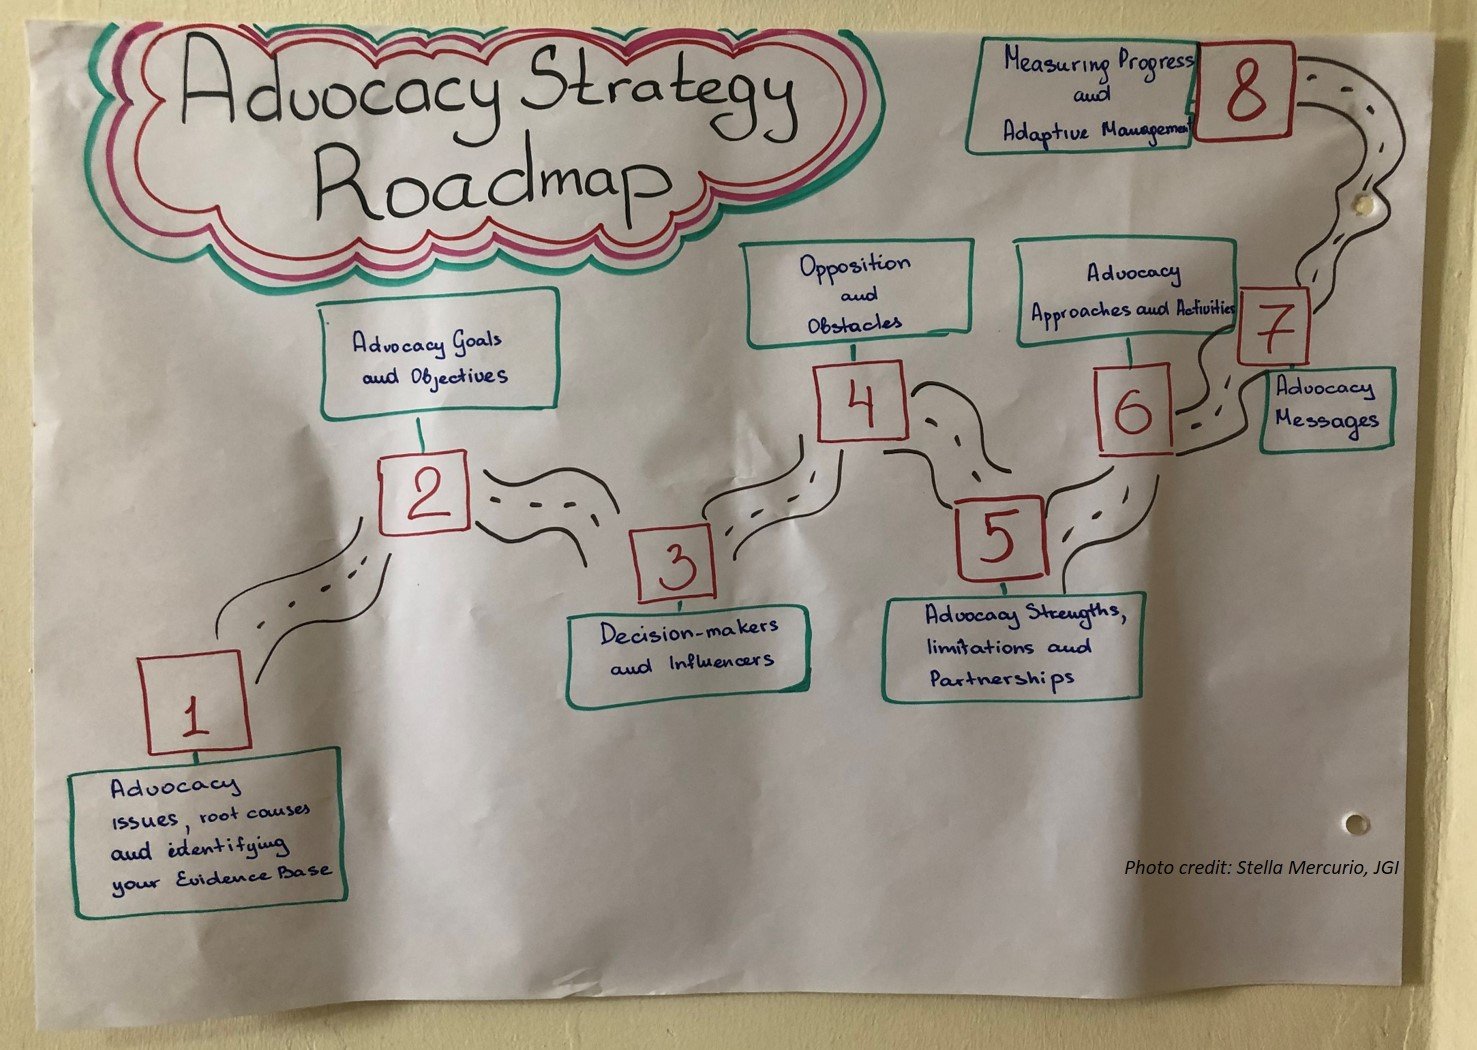 ABCG FWWASH advocacy strategy planning training 2019